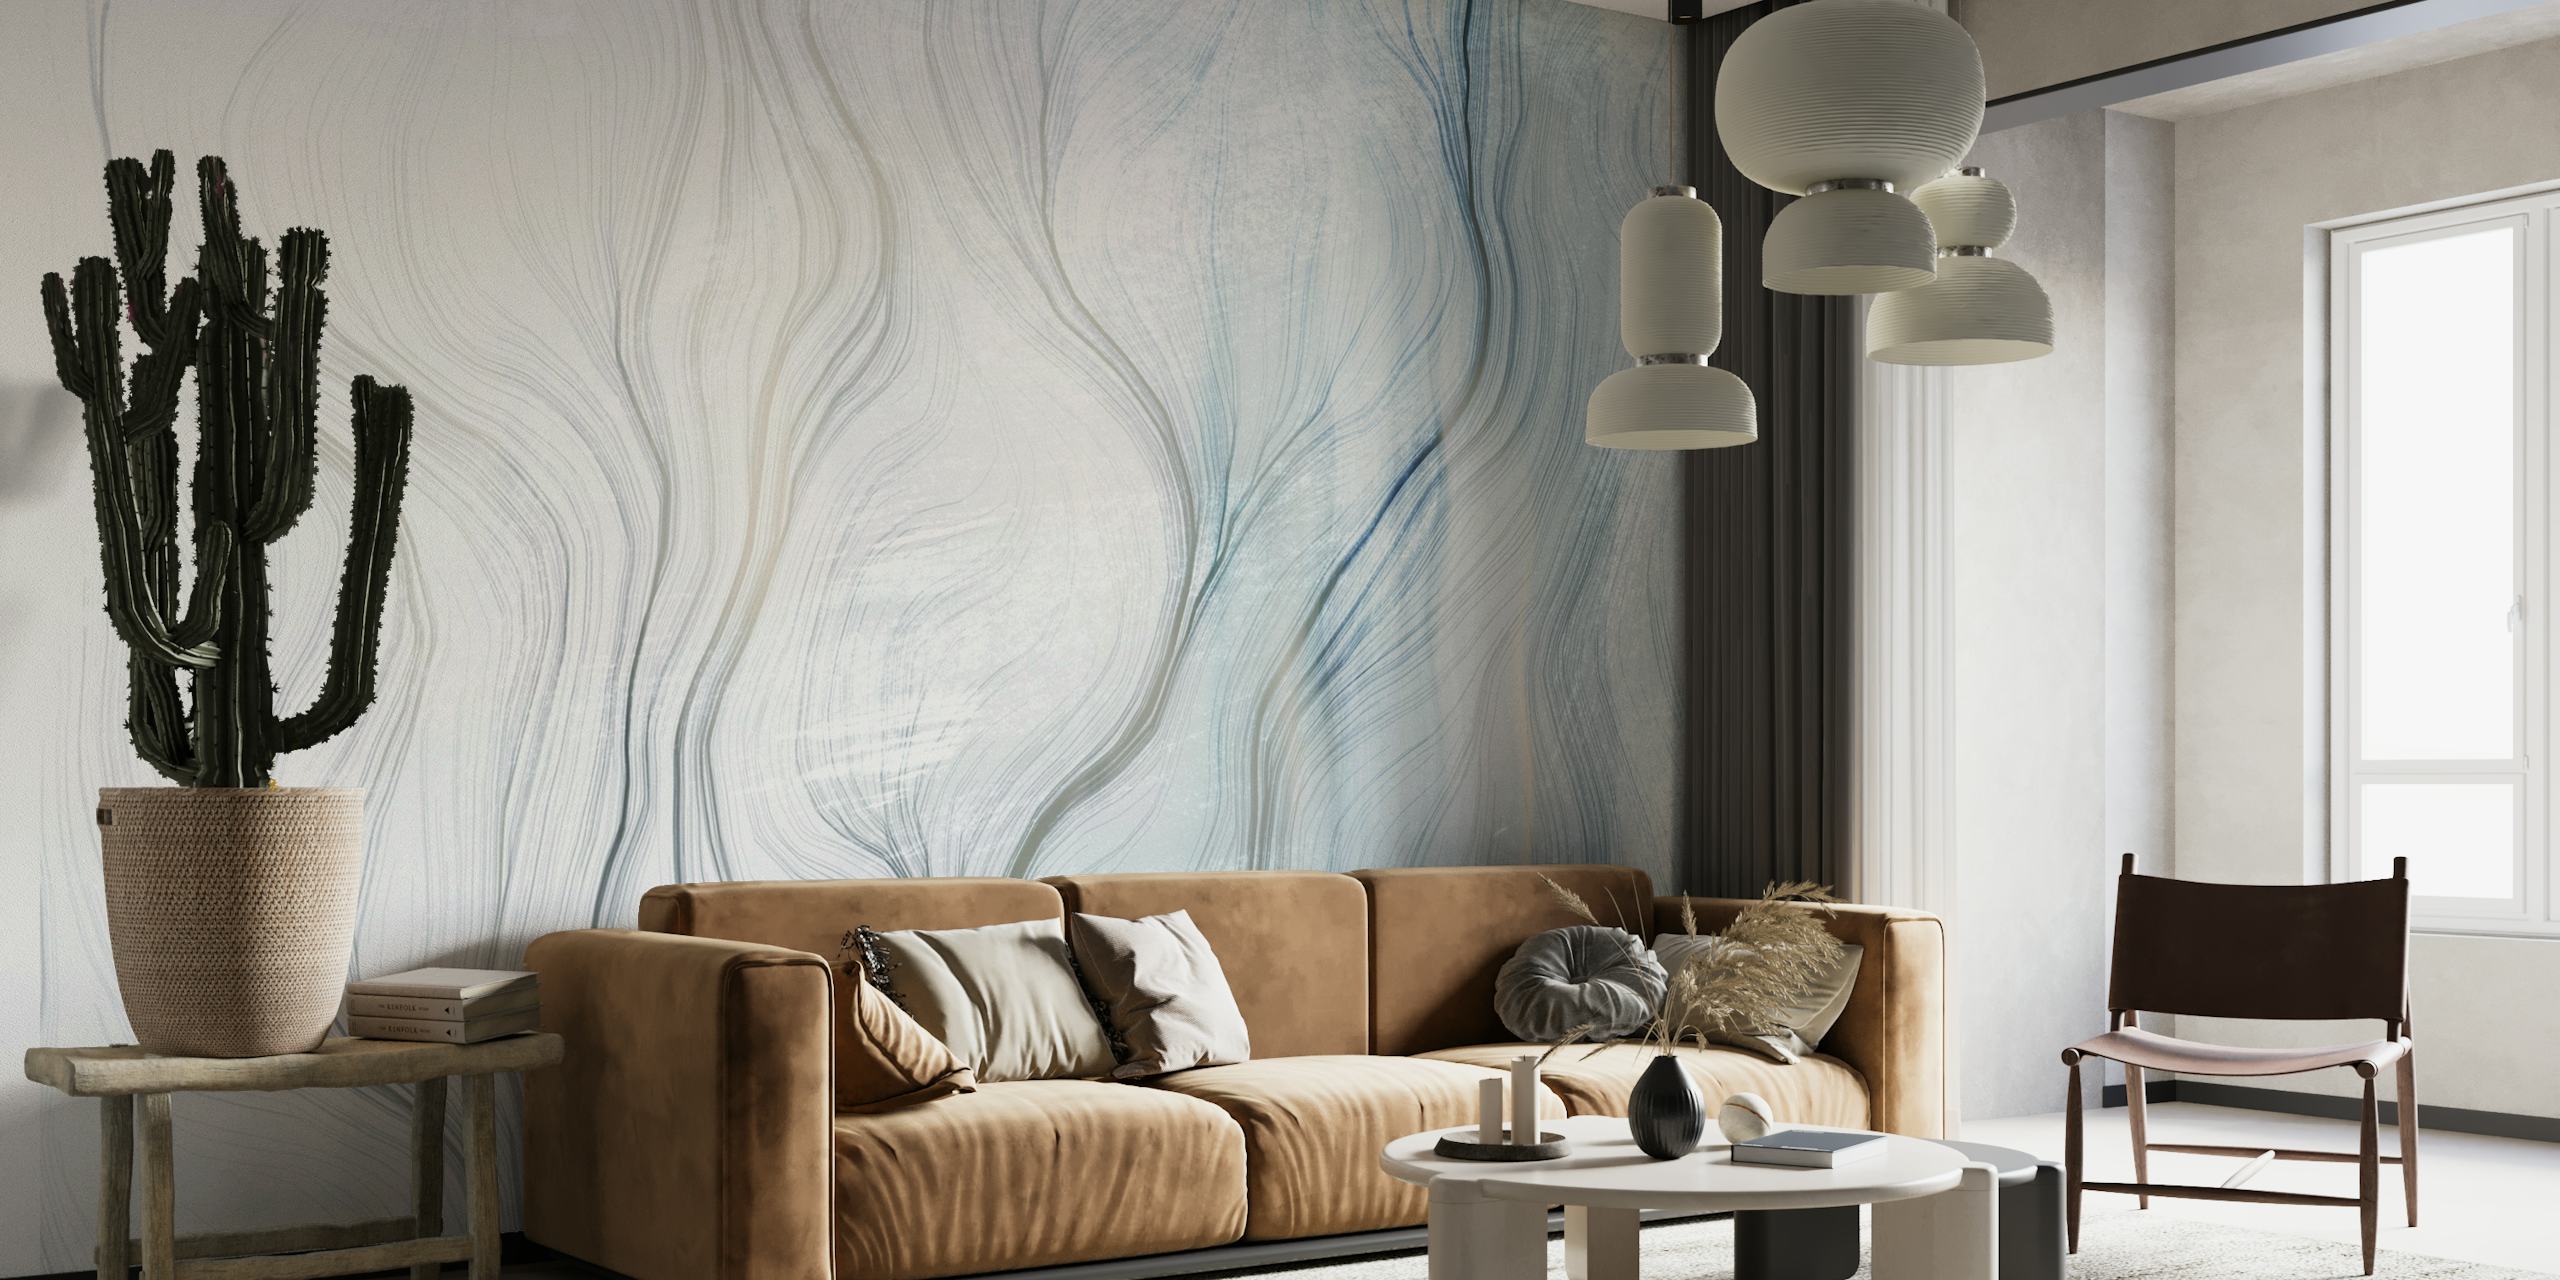 Abstrakt vægmaleri med bløde kurver og gradient nuancer af blå og grå, der skaber en rolig atmosfære